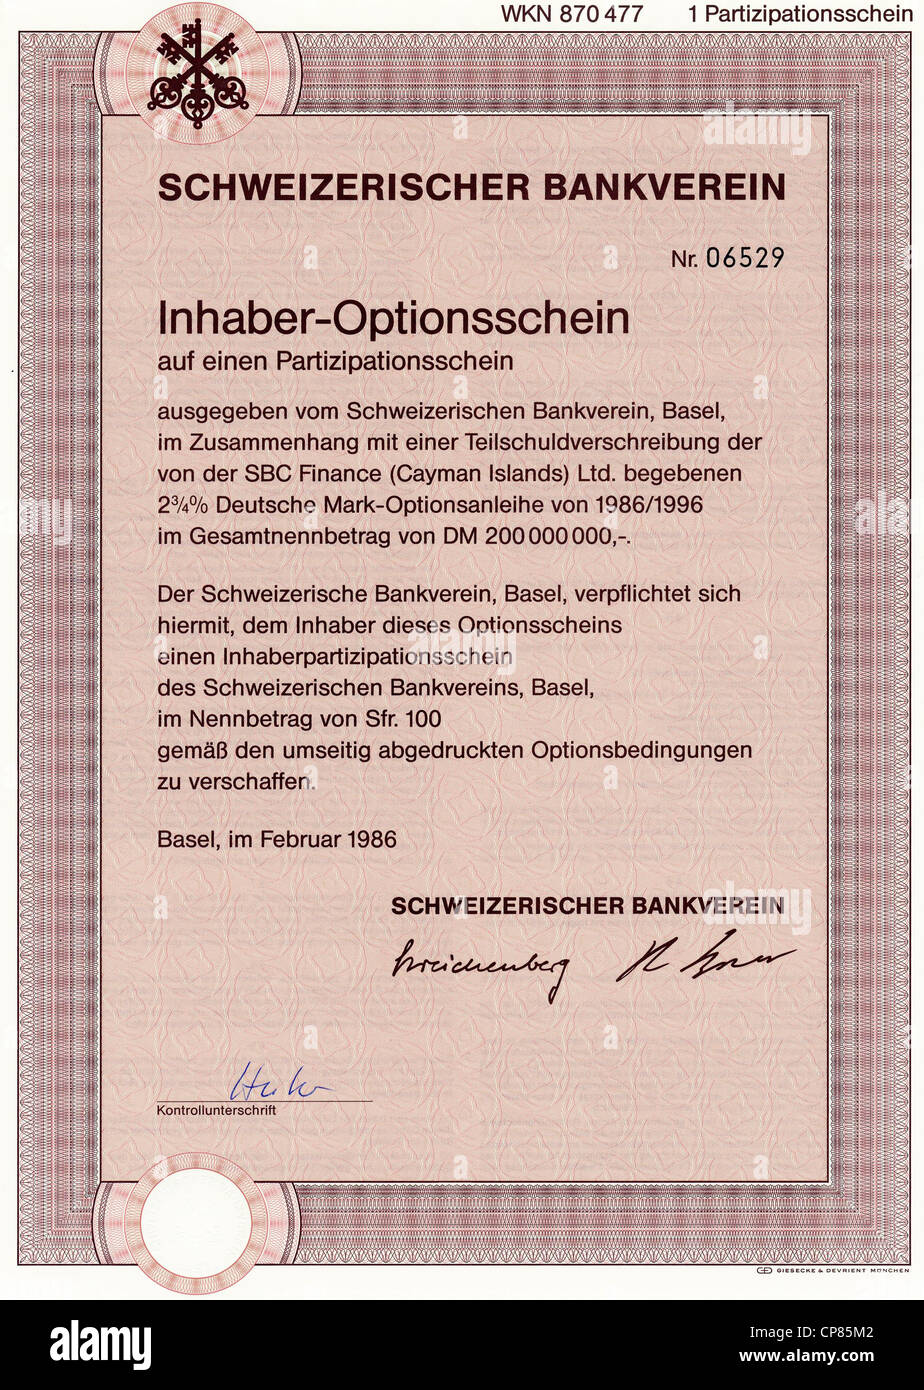 Historic Stock certificato, certificato di titoli al portatore, warrant, Inhaber-Optionsschein für Aktien, Schweizerischer Bankverein Foto Stock